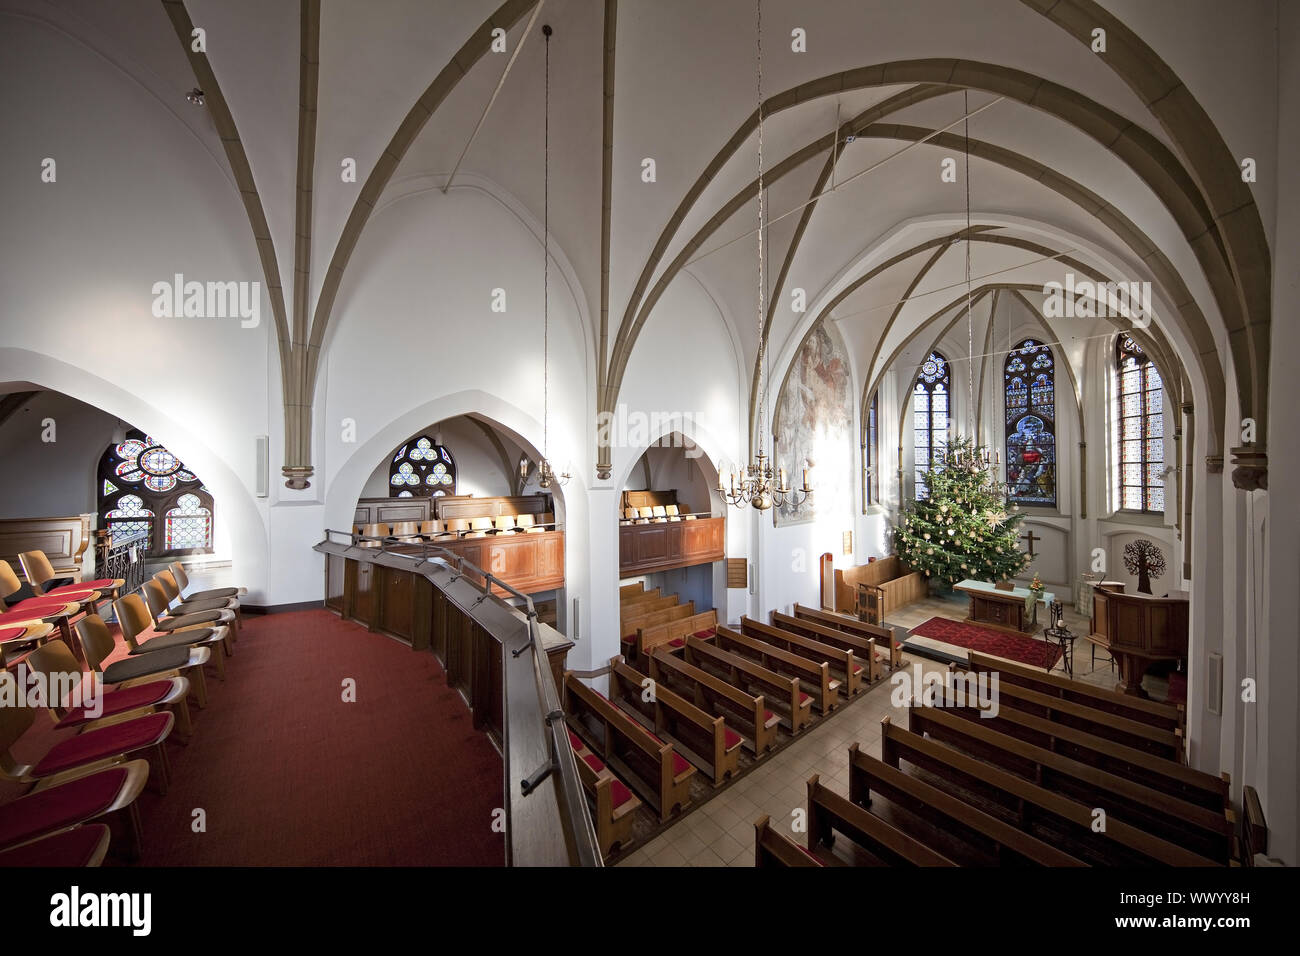 Chiesa protestante, vista interna, Hamminkeln, Basso Reno, Renania settentrionale-Vestfalia, Germania, Europa Foto Stock